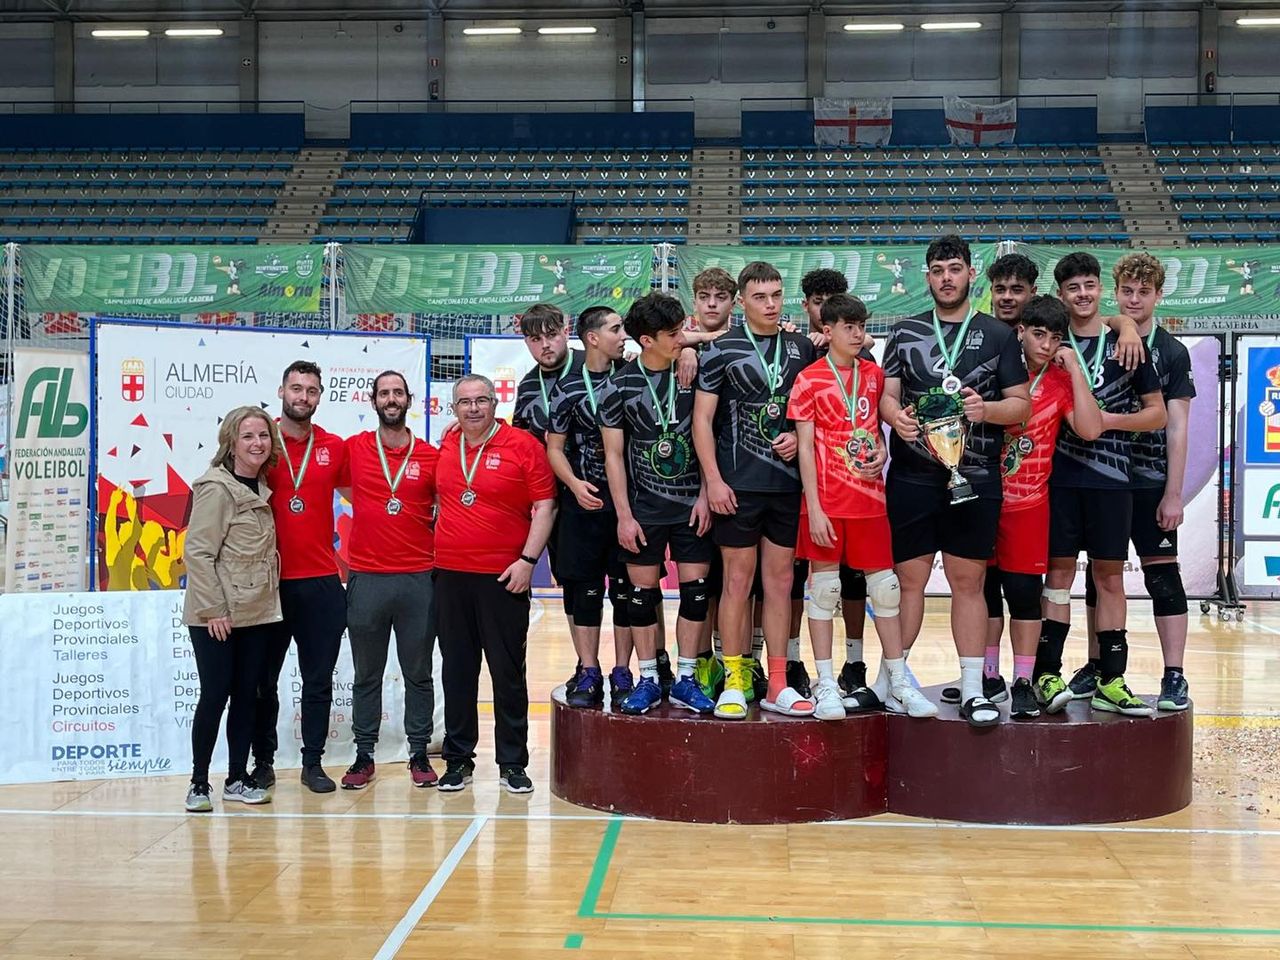 El juvenil masculino del Club Voleibol de Berja se clasifica para el Campeonato de España